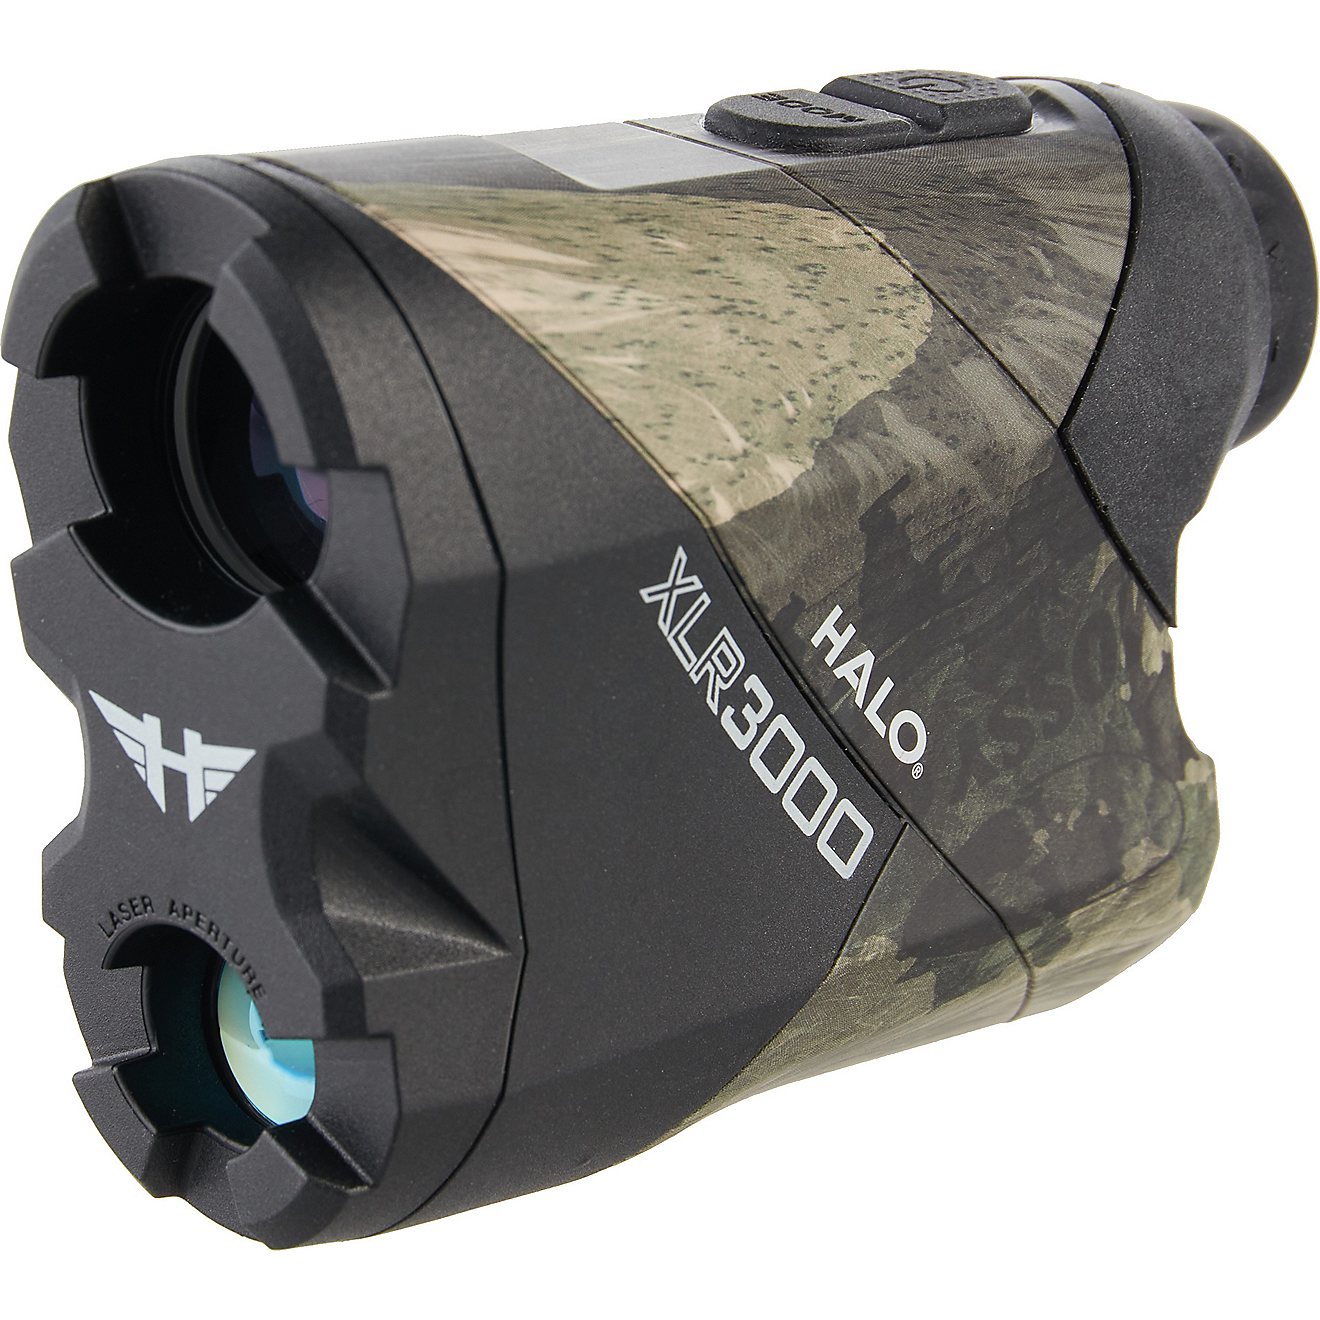 HALO XLR3000 Mossy Oak Terra Gila Laser Range Finder                                                                             - view number 4